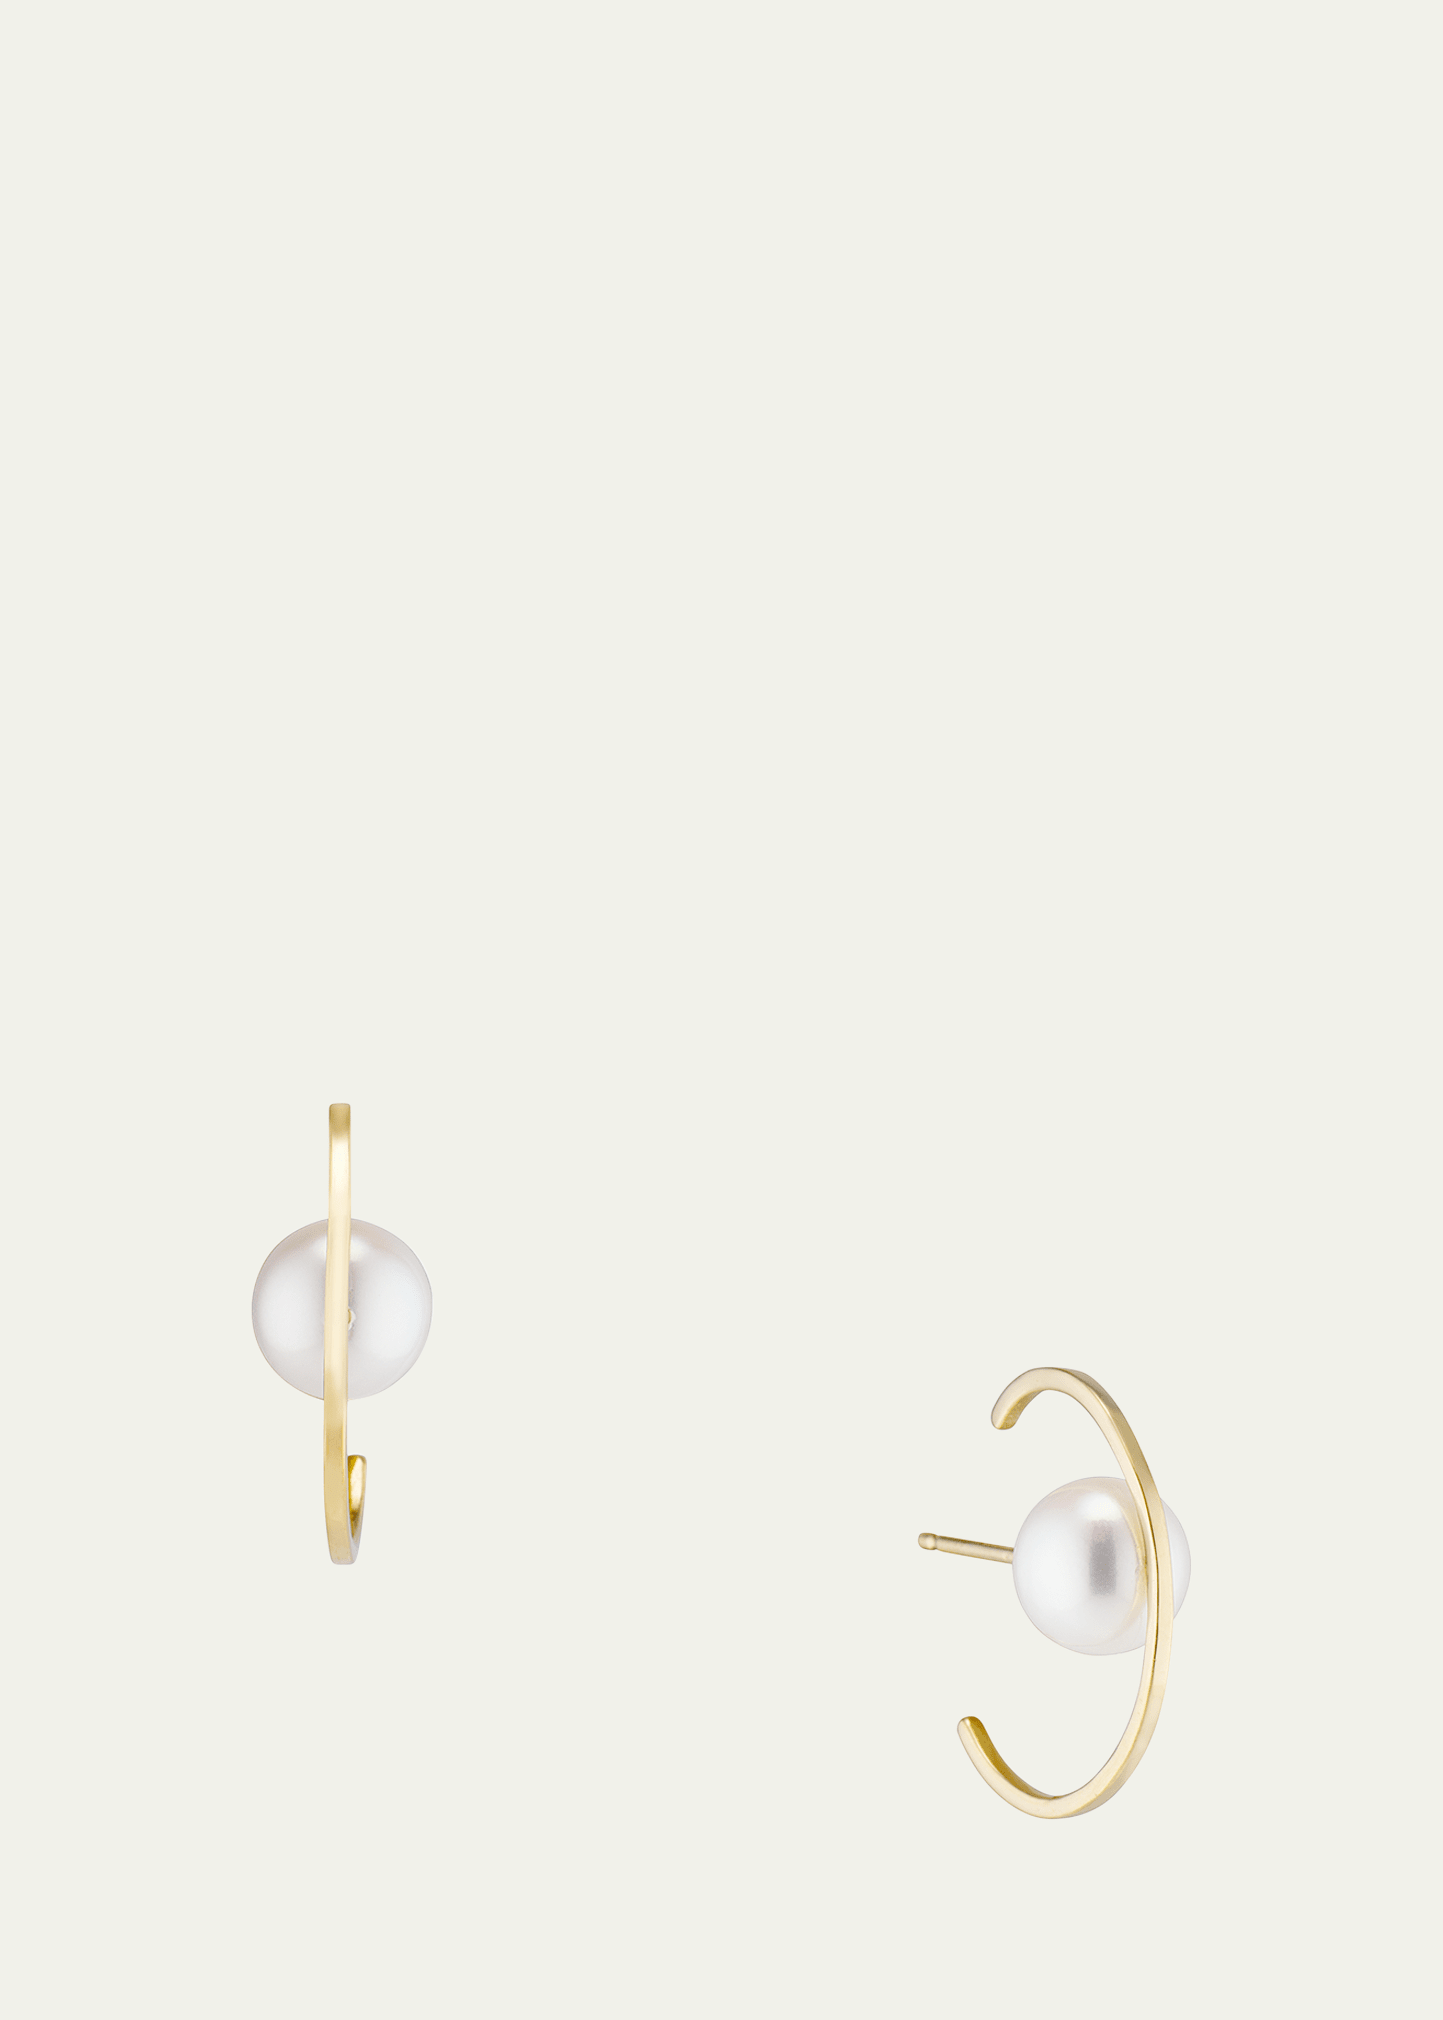 Orbit 6mm Pearl Ear Cuffs in 18K Gold